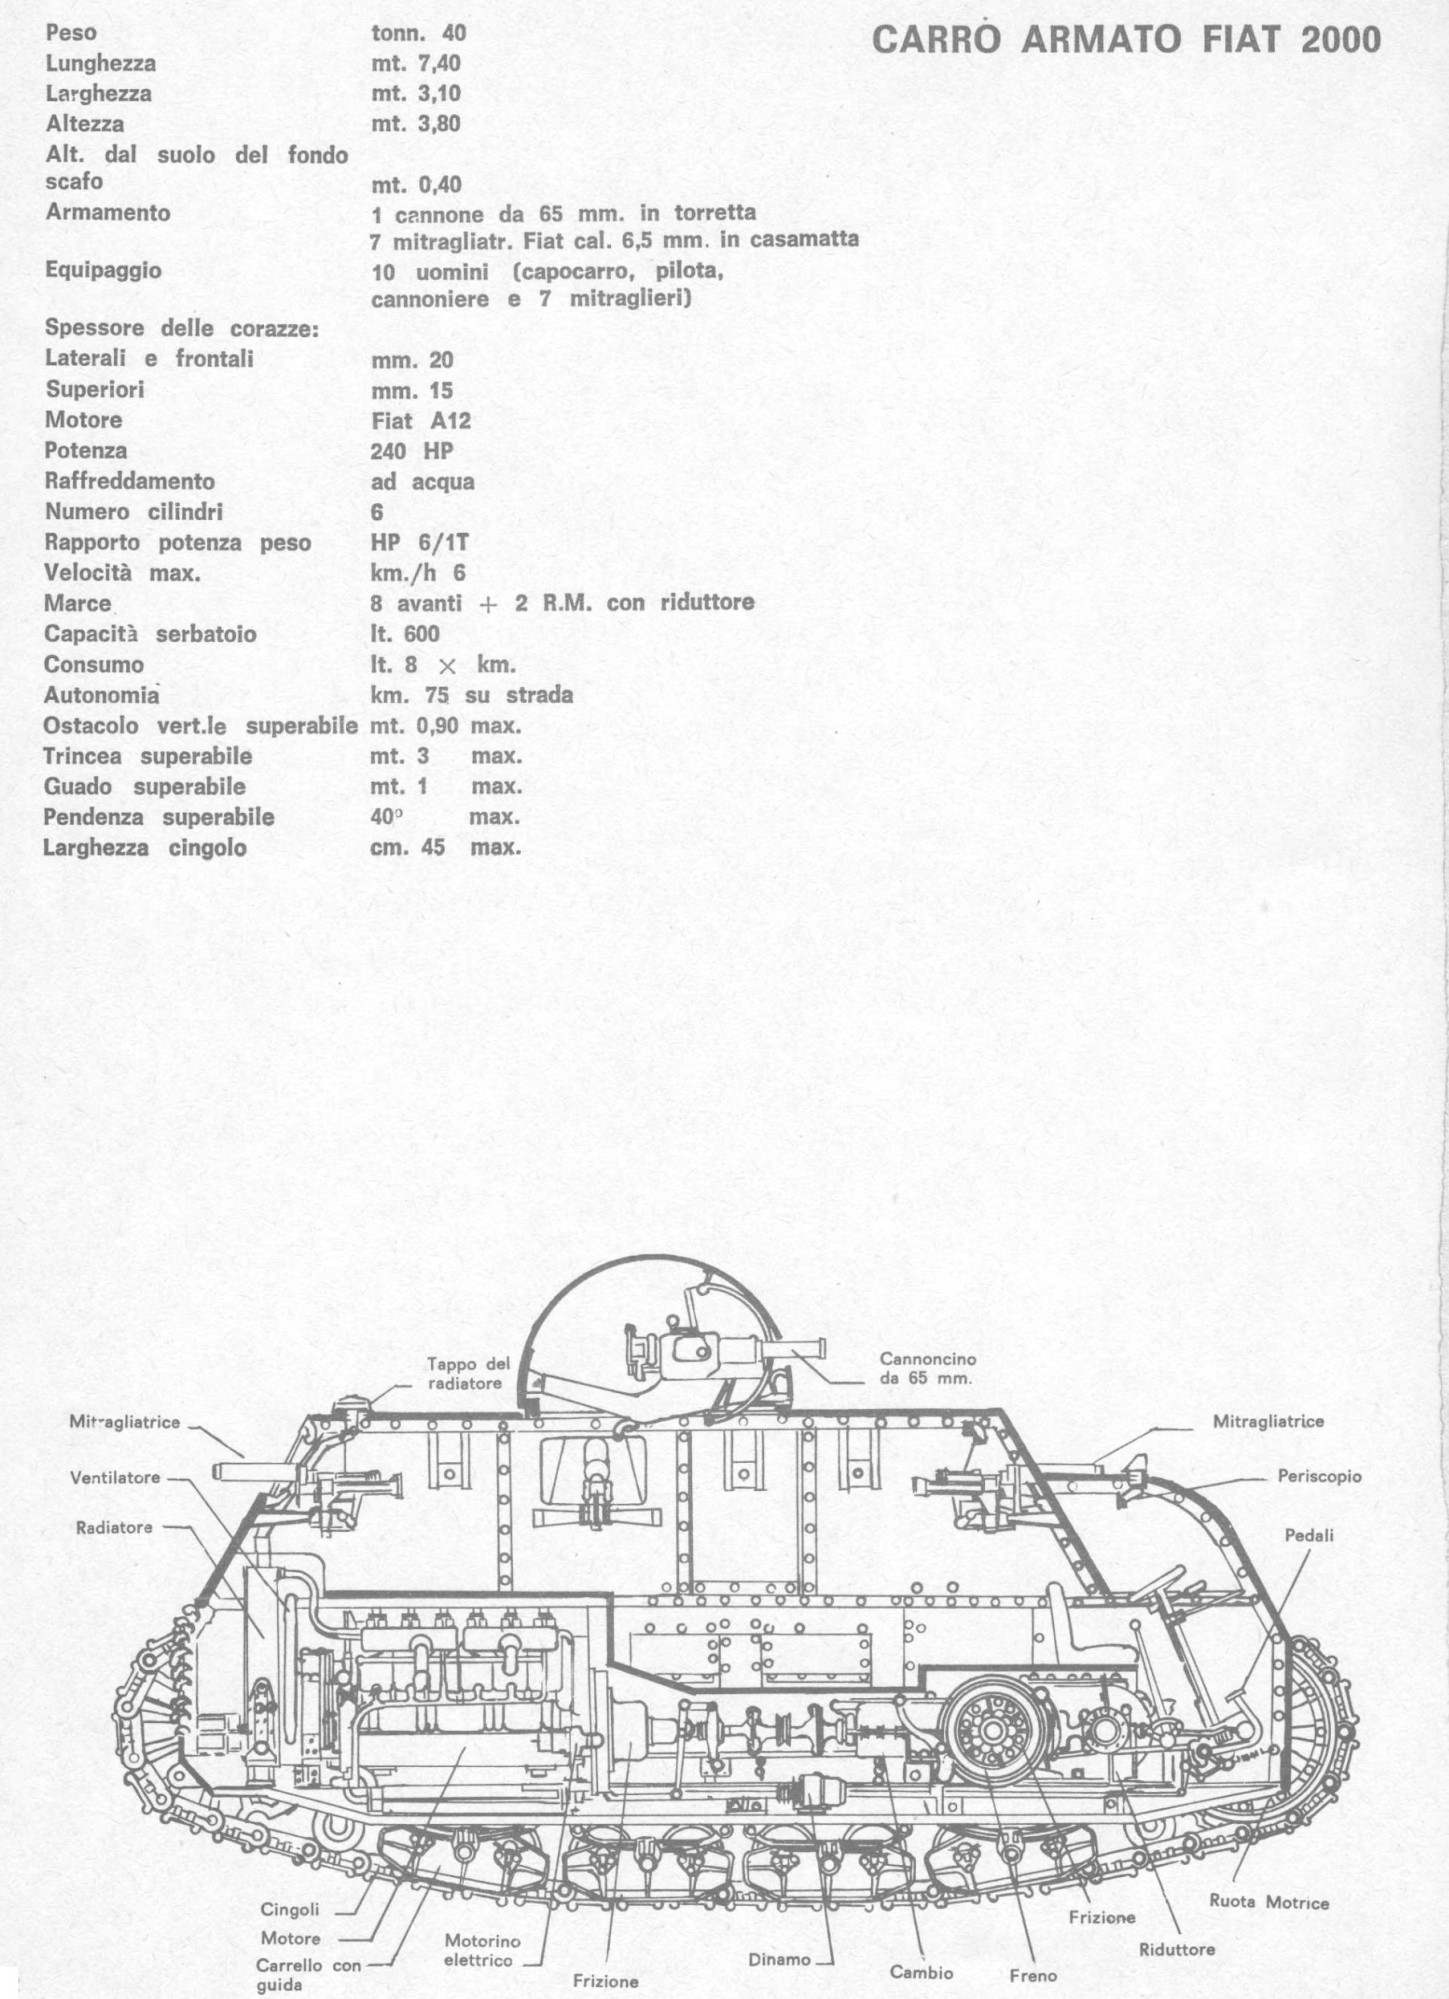 1706476193 409 Early Italian Tanks